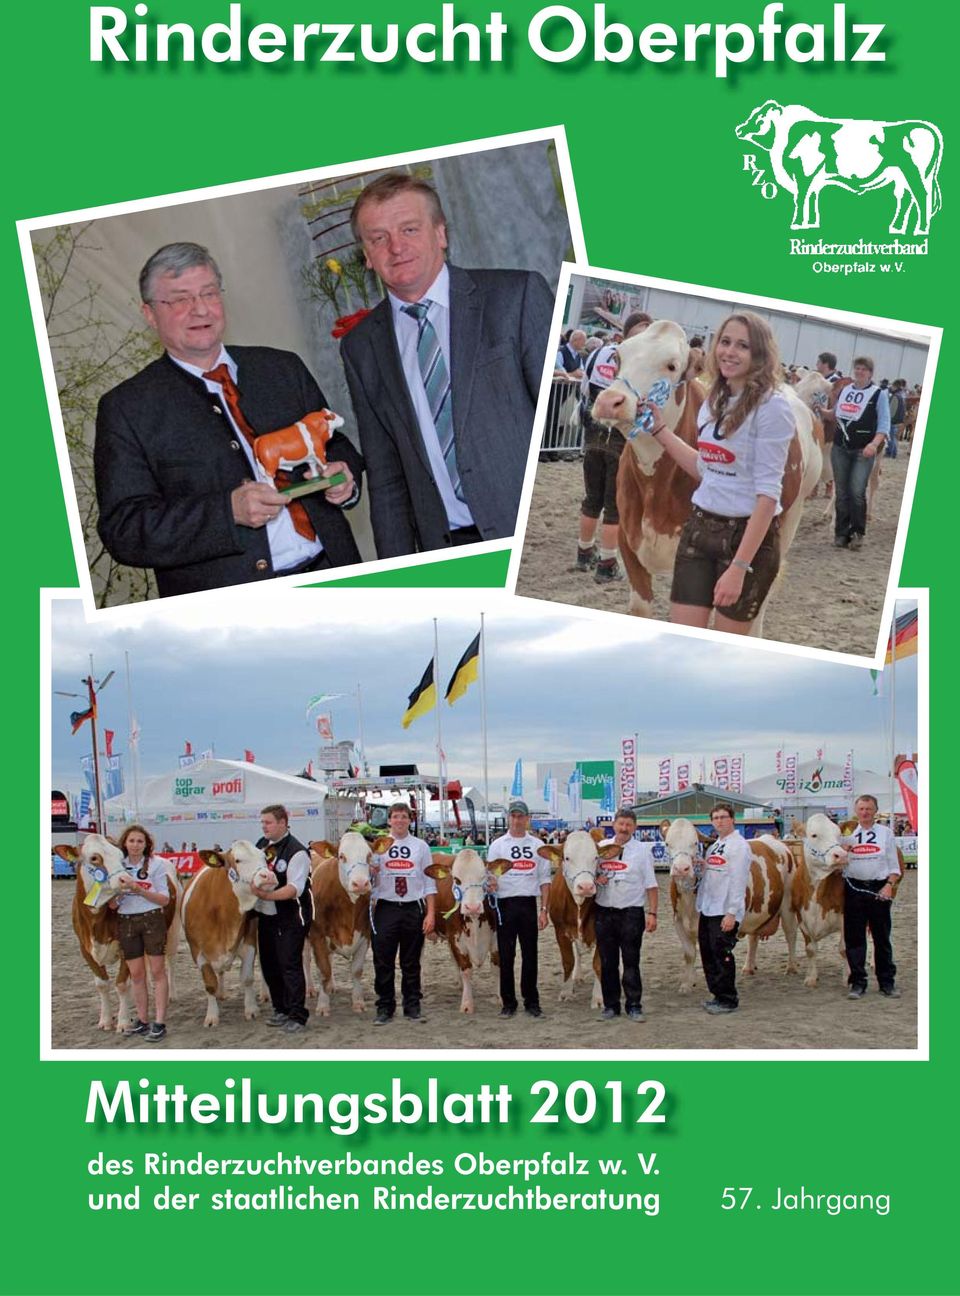 Rinderzuchtverbandes d Oberpfalz w.